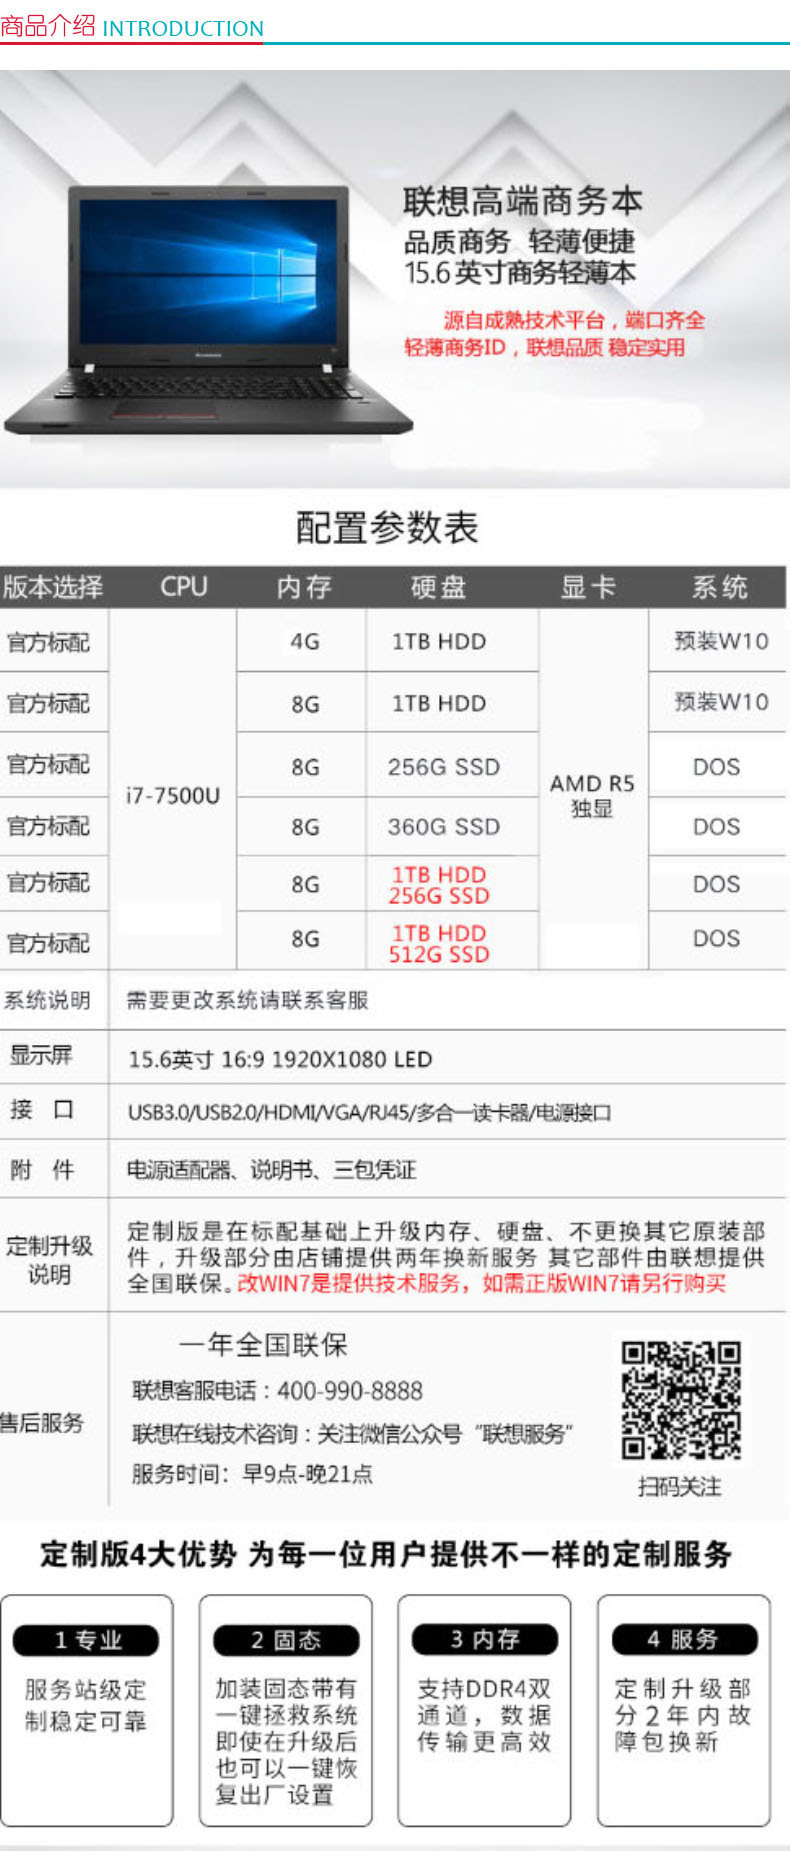 联想 lenovo 商用办公笔记本电脑 昭阳E52-80 (黑色) (I7-7500U/8G/1T/RAMBO/2G/W10/FHD三年保)